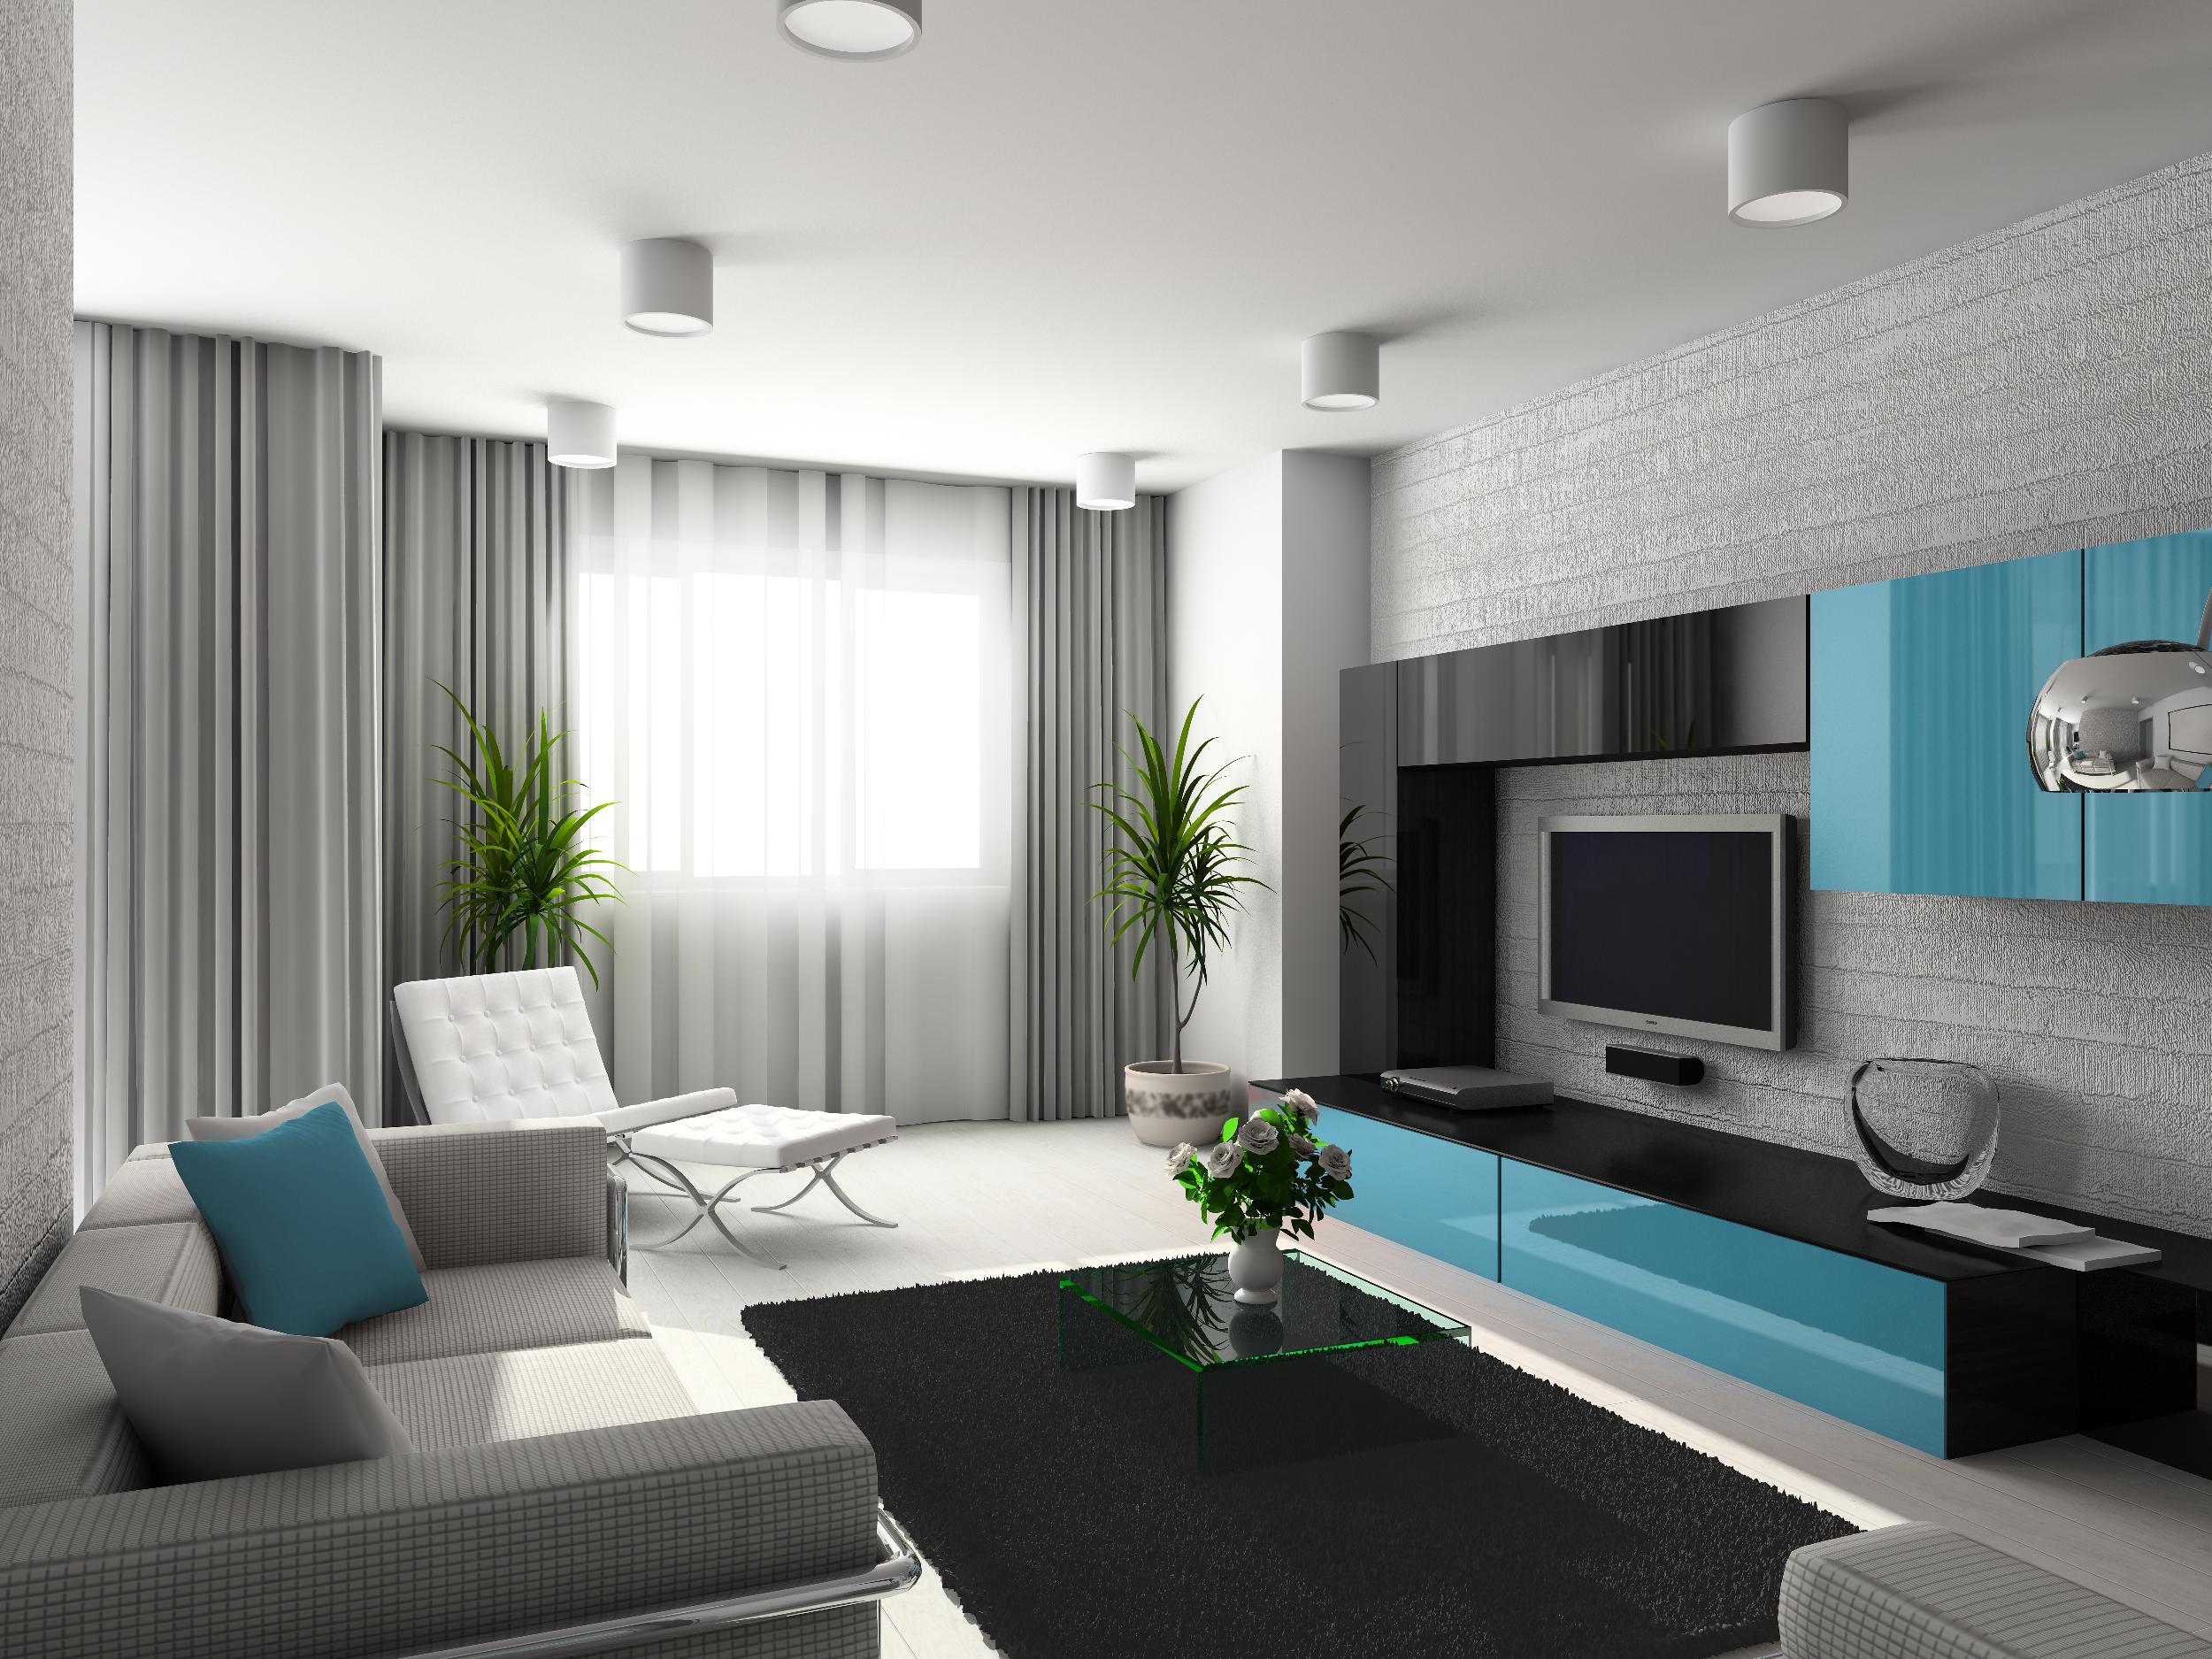 Дизайн зала с серыми обоями » Картинки и фотографии дизайна квартир .